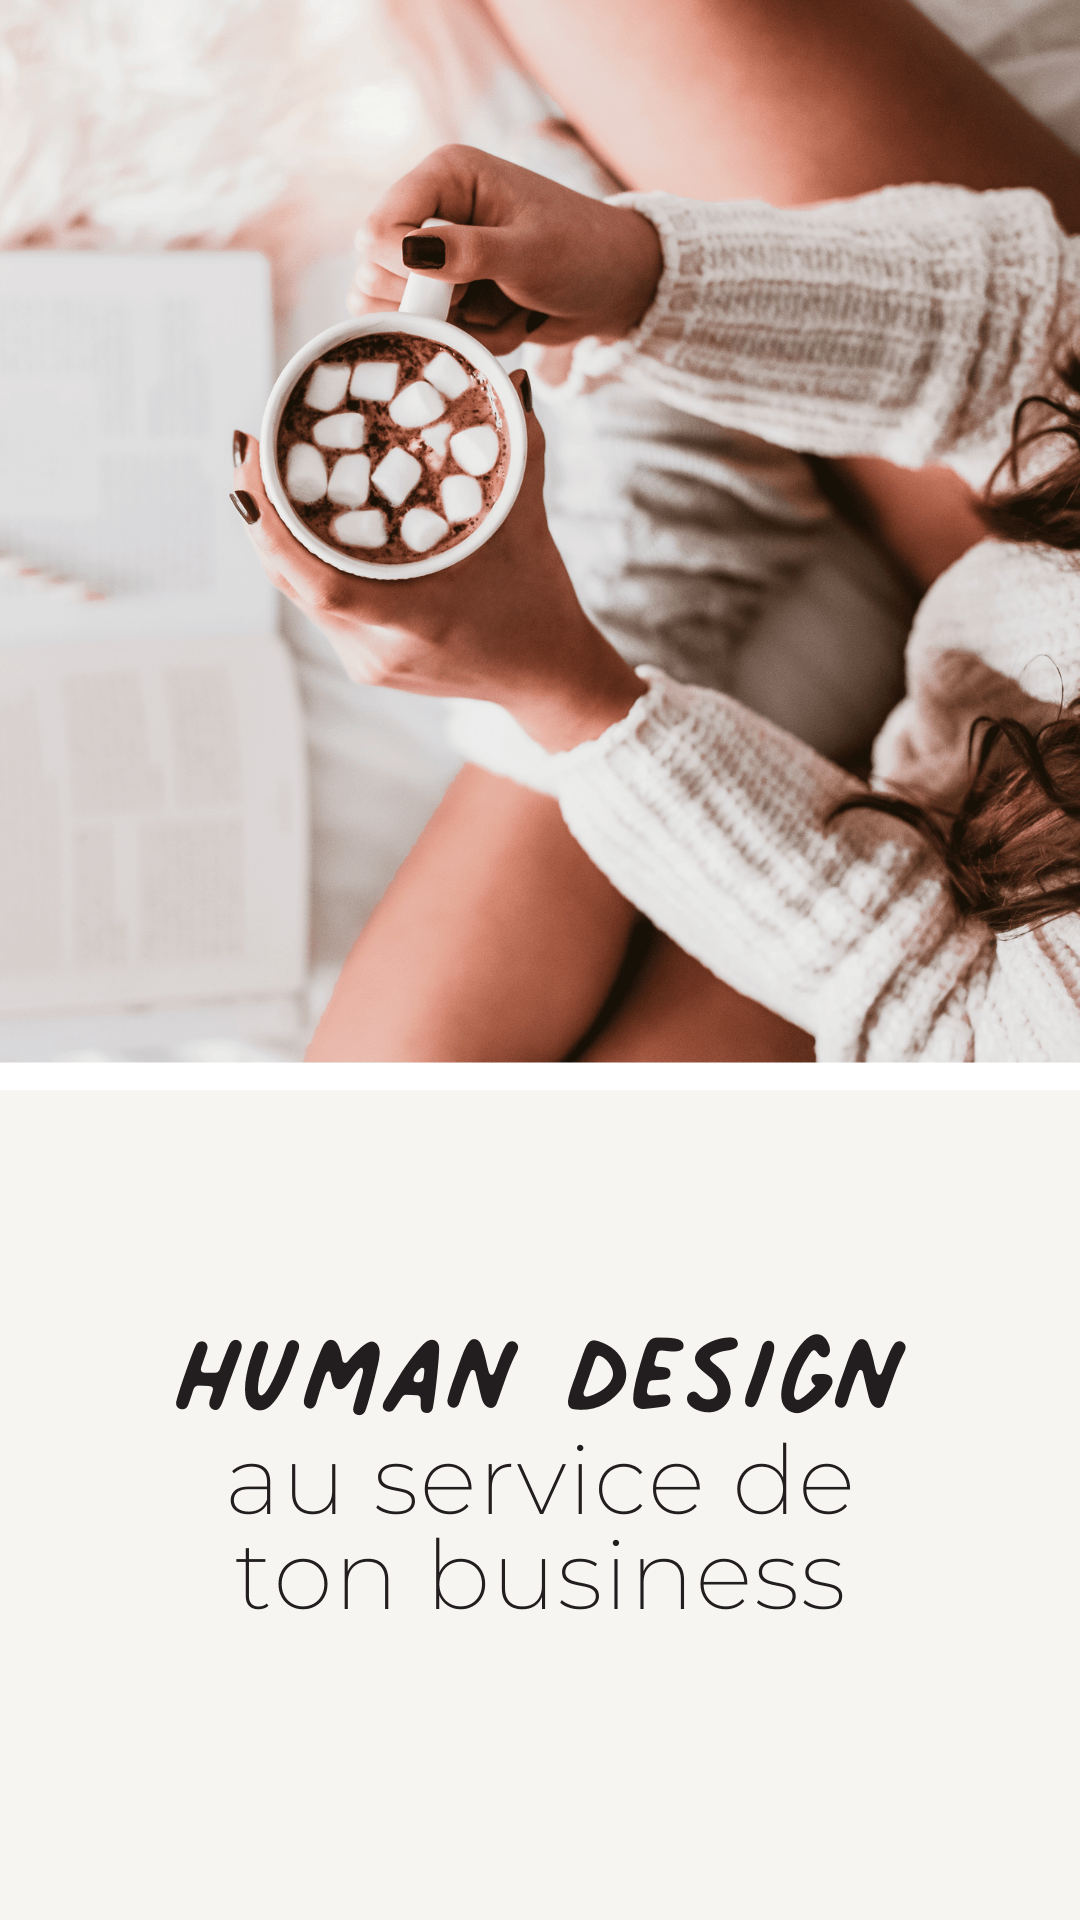 Le Human Design au service de ton business